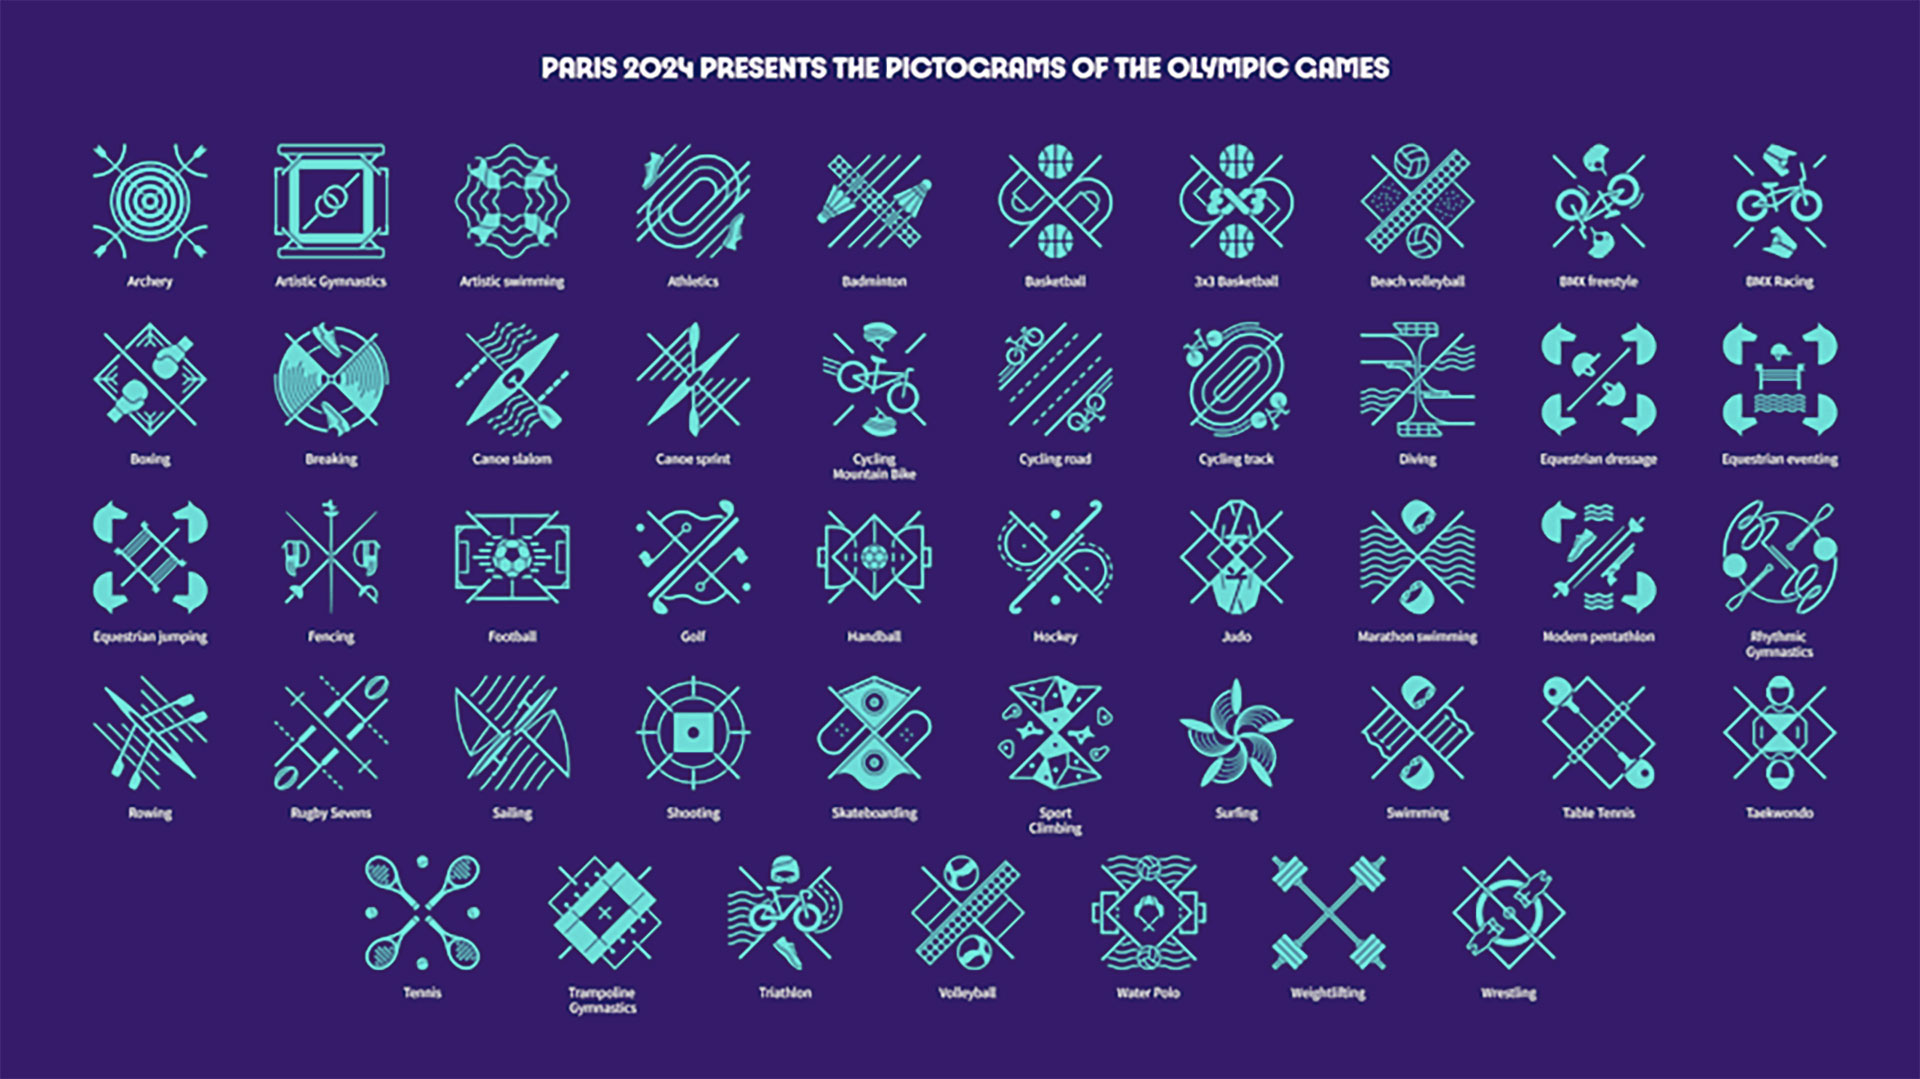 Pictogramas para los Juegos Olímpicos París 2024.